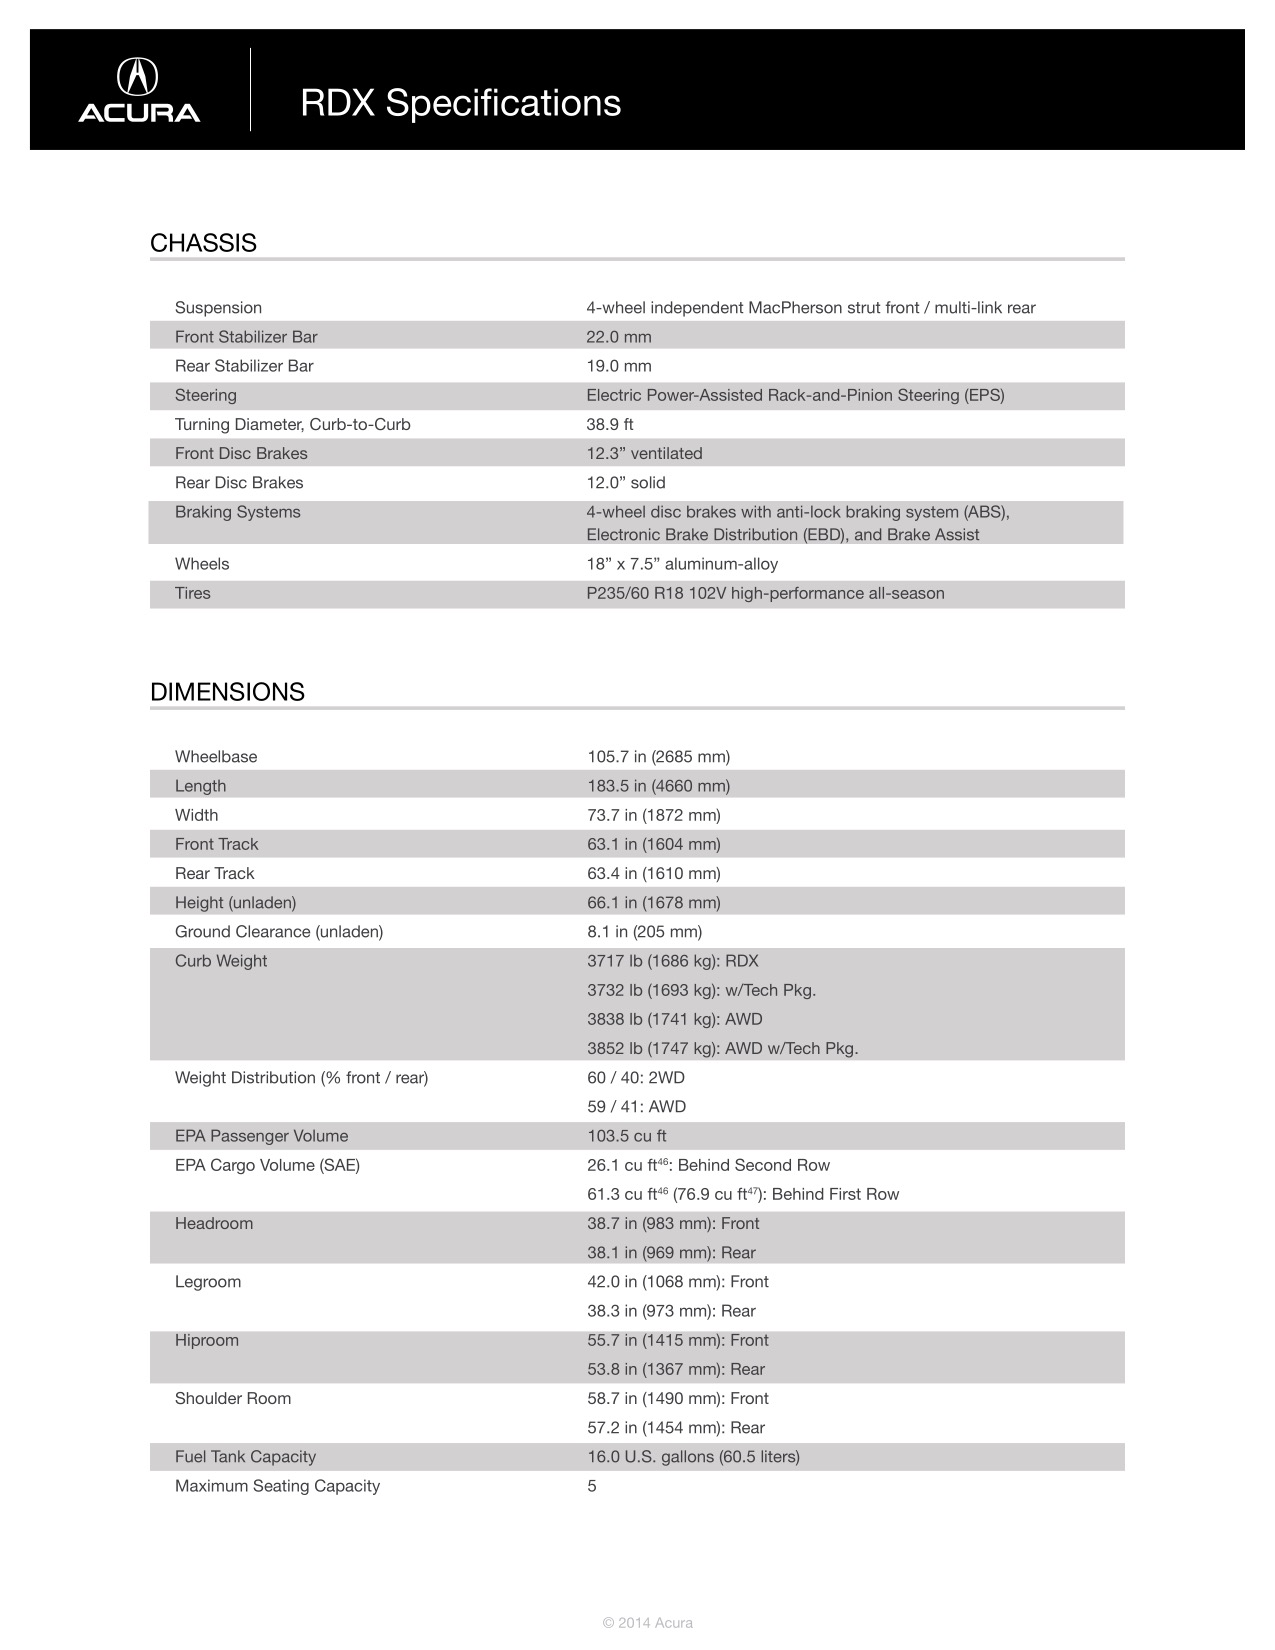 2015 Acura RDX Brochure Page 11